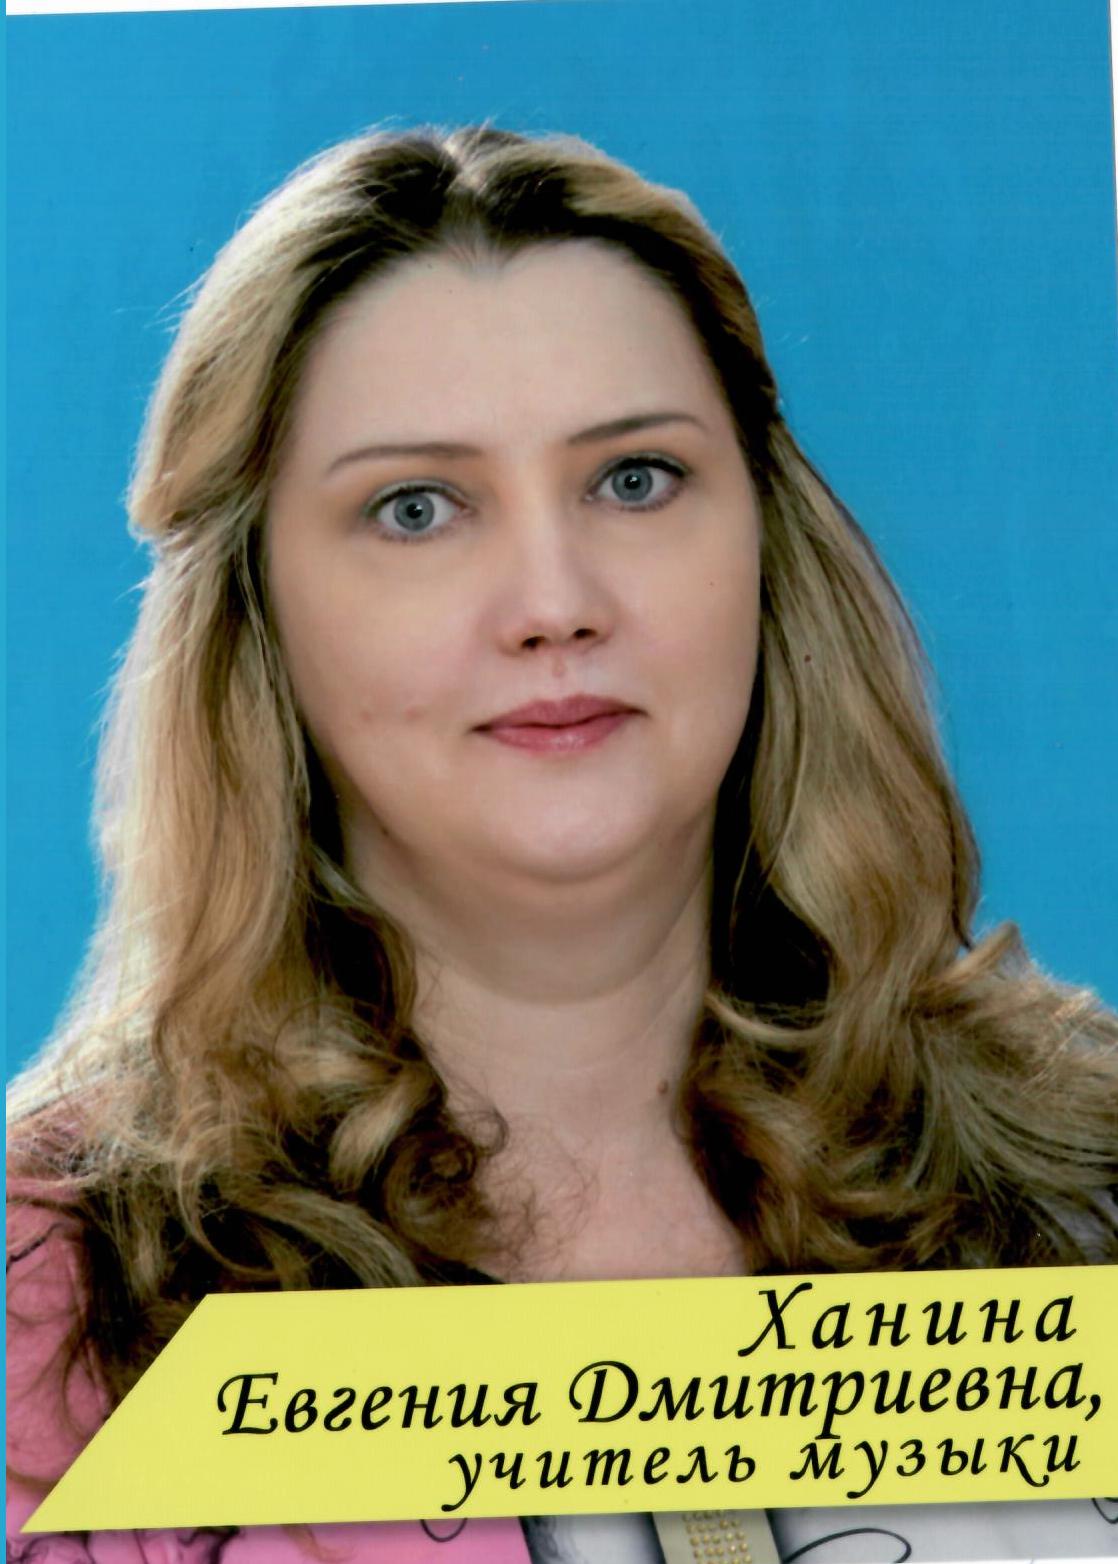 Ханина Евгения Дмитриевна.